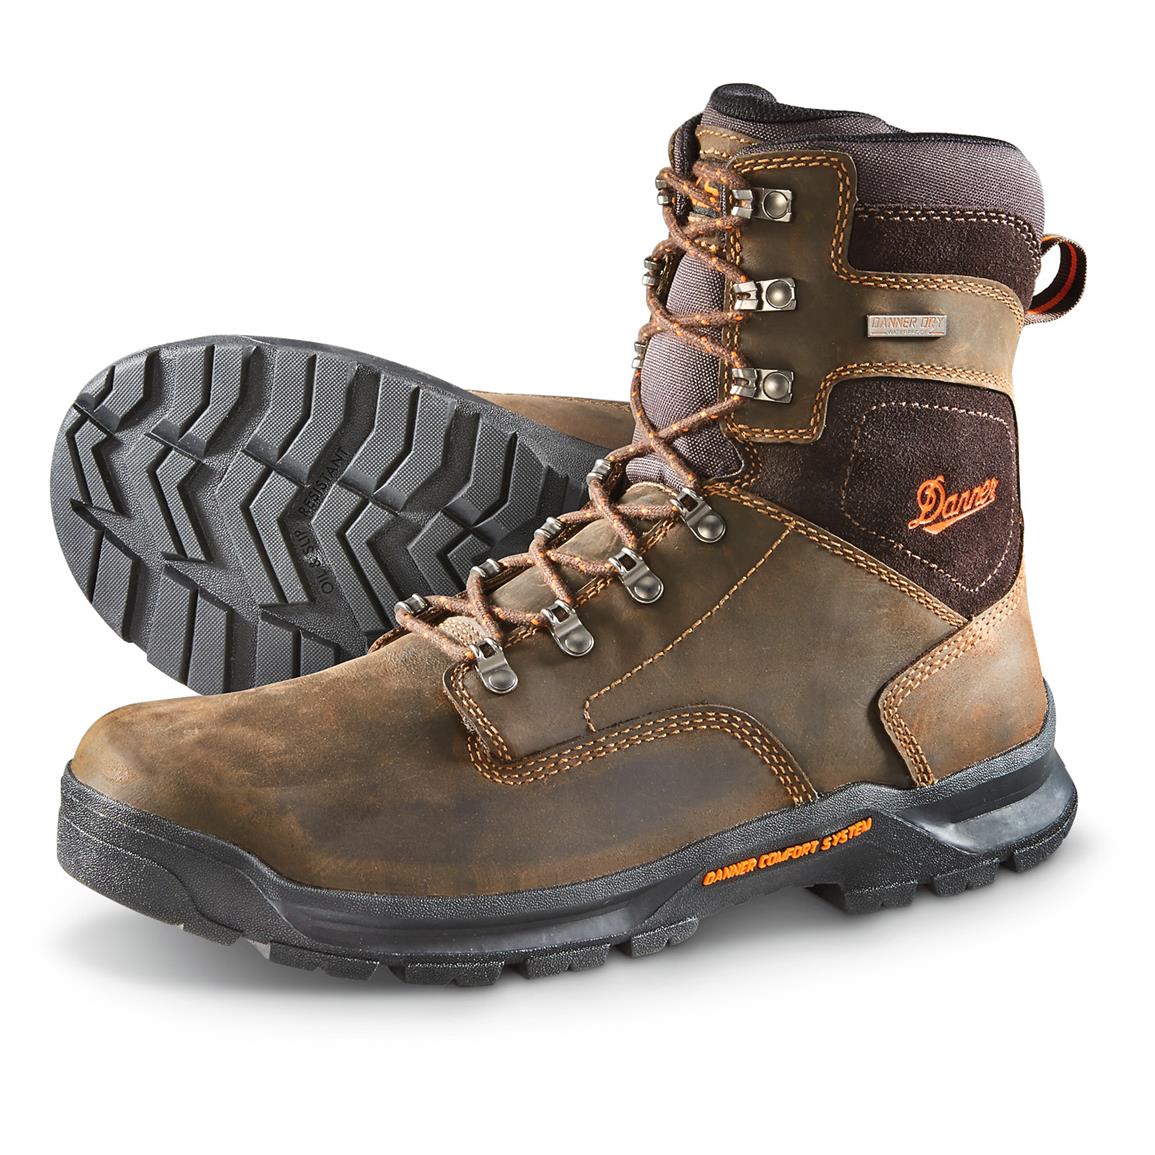 Danner Men's Crafter Composite Toe Waterproof Work Boots - 643945, Work